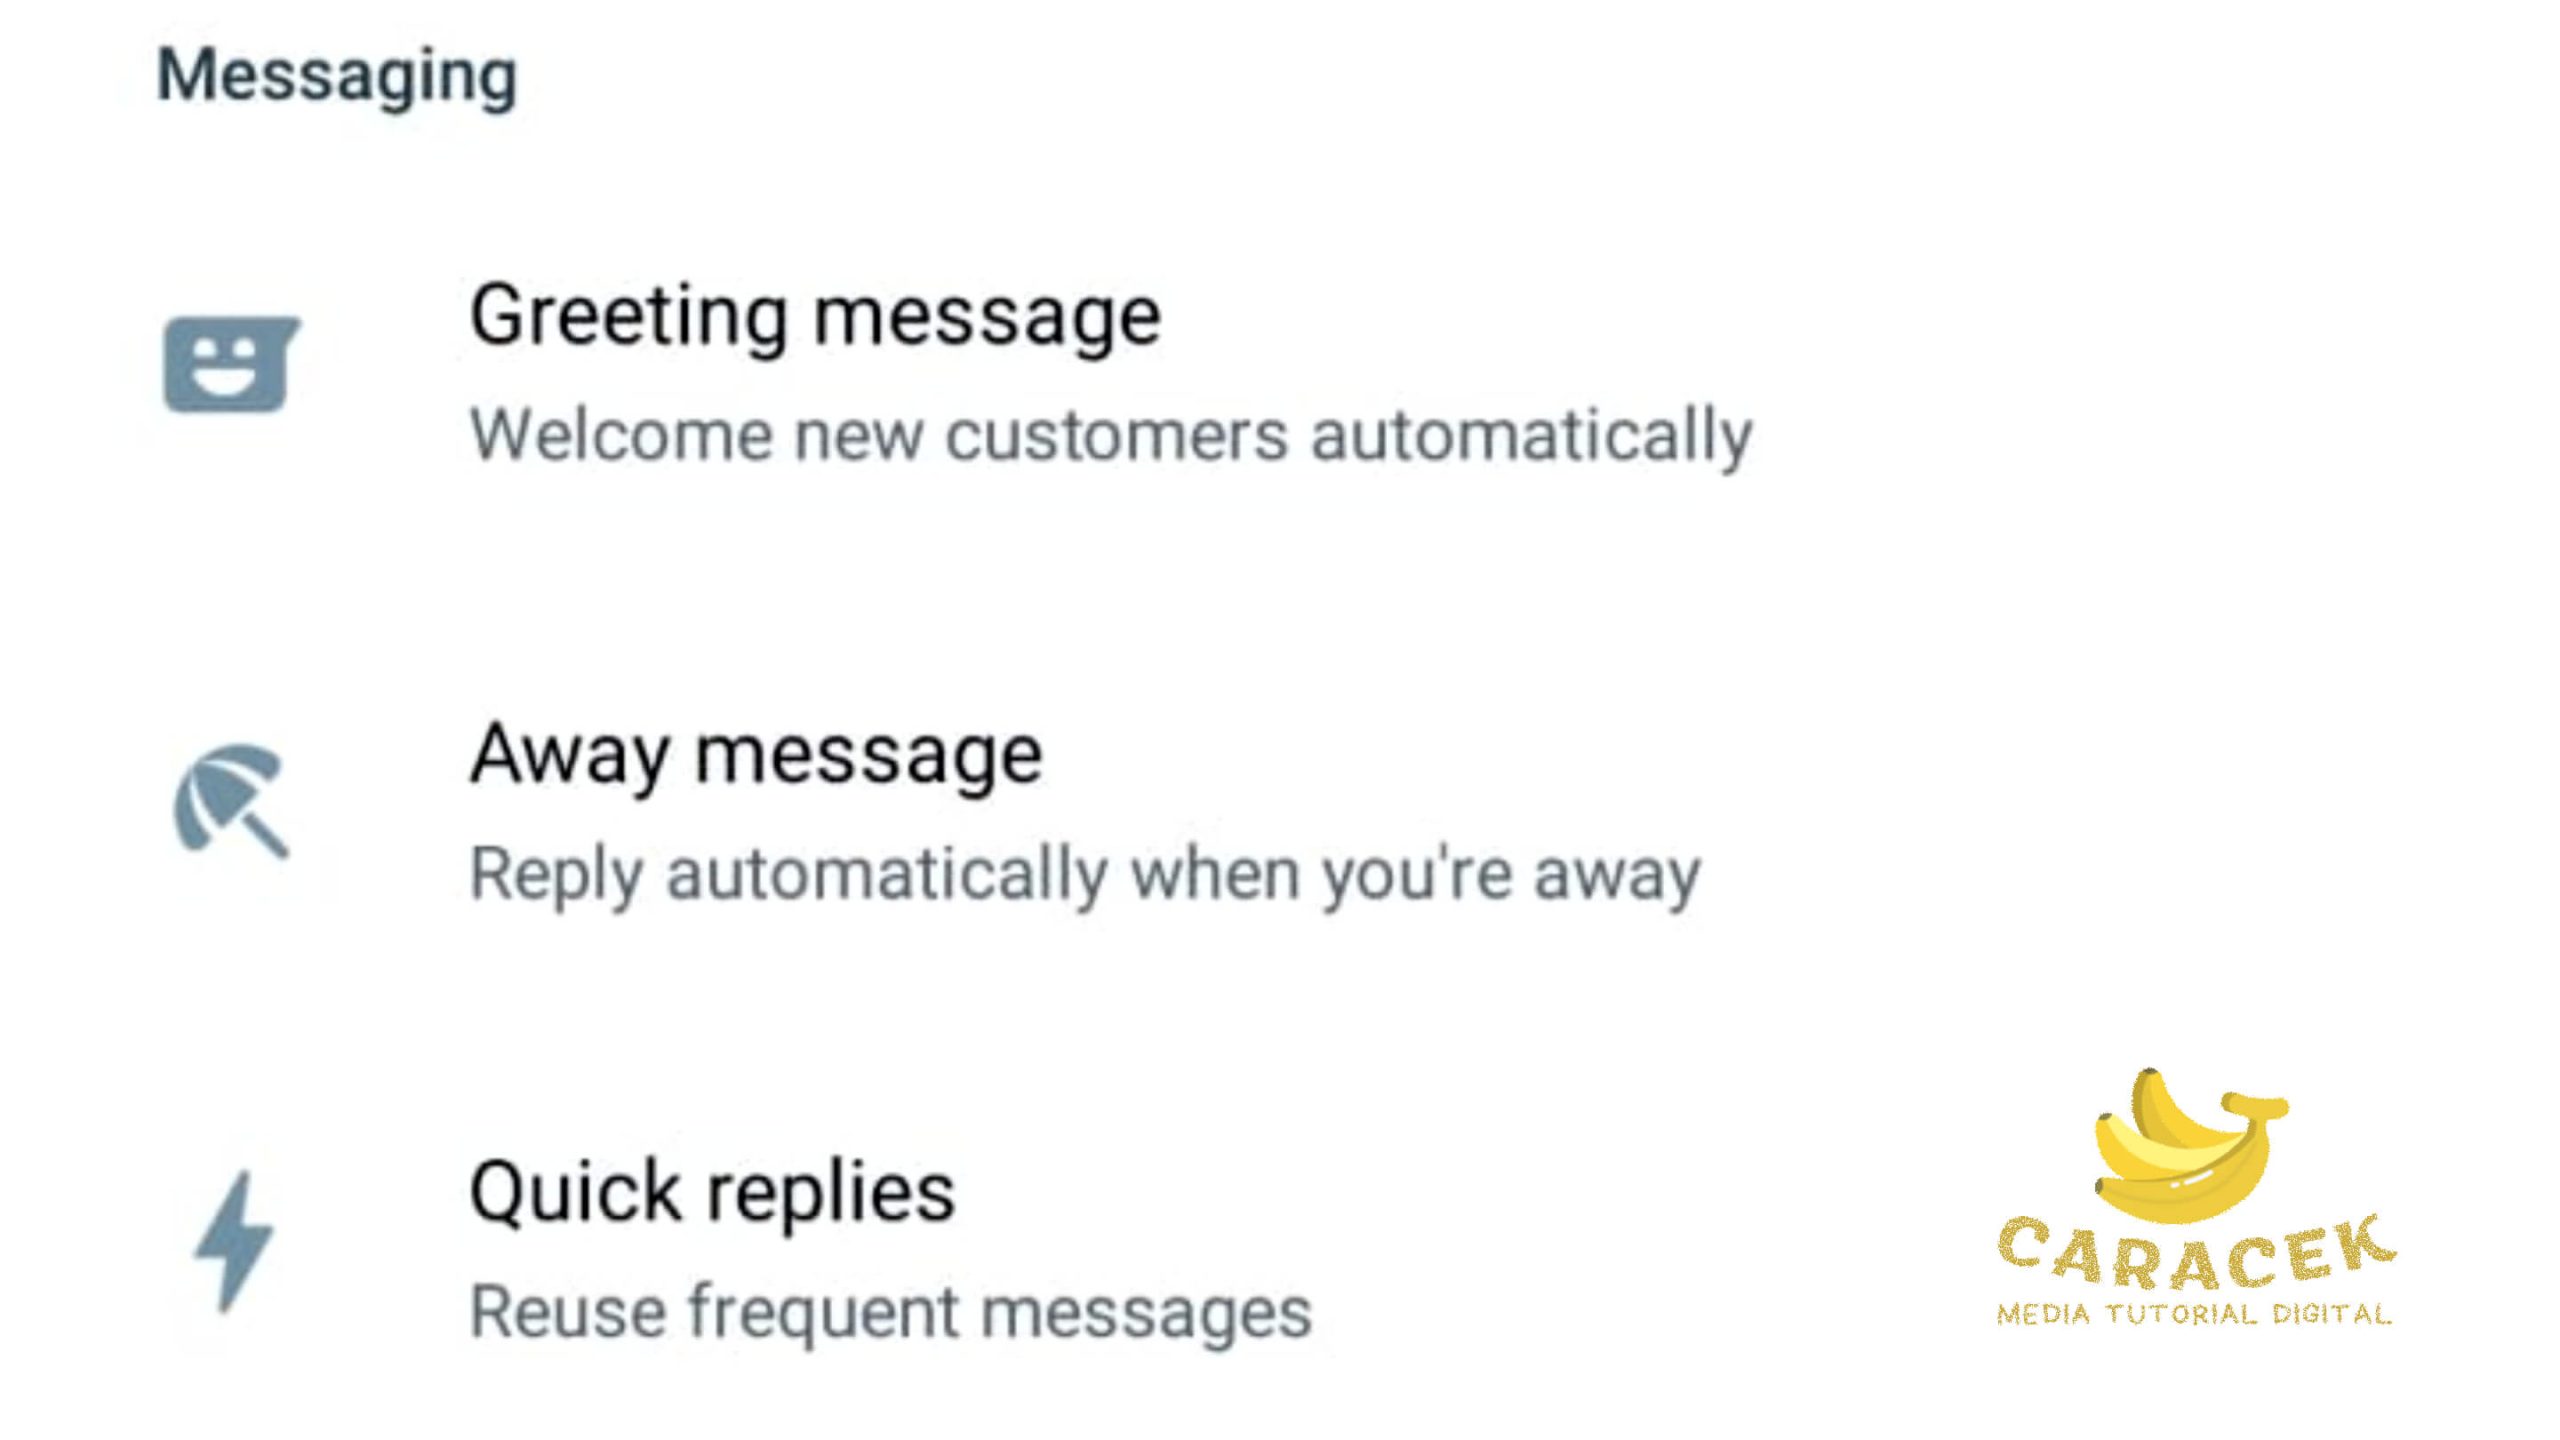 Cara Membuat WhatsApp Auto Reply